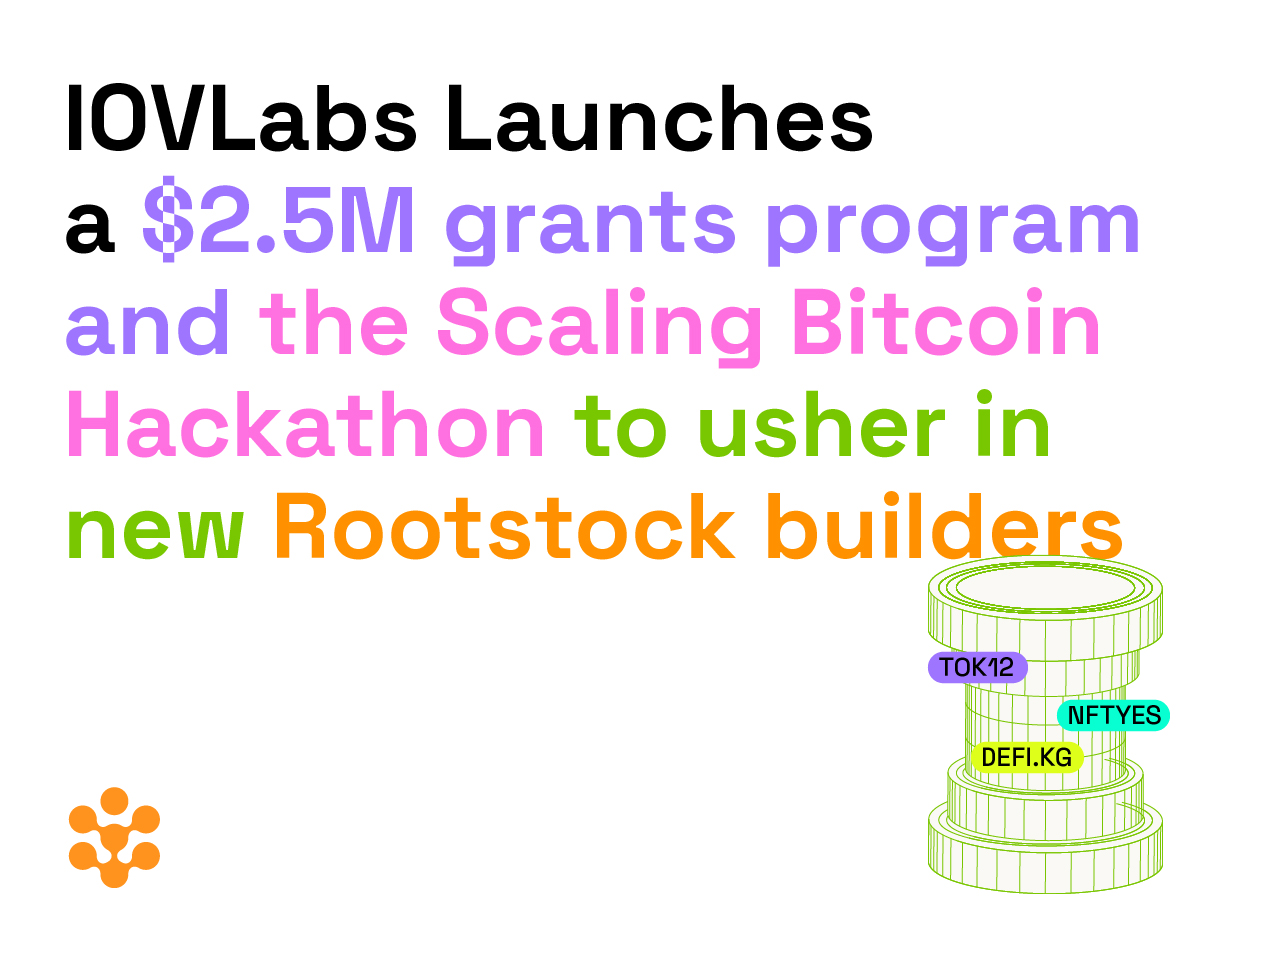 IOVLabs giới thiệu chương trình tài trợ 2,5 triệu đô la và mở rộng Bitcoin Hackathon